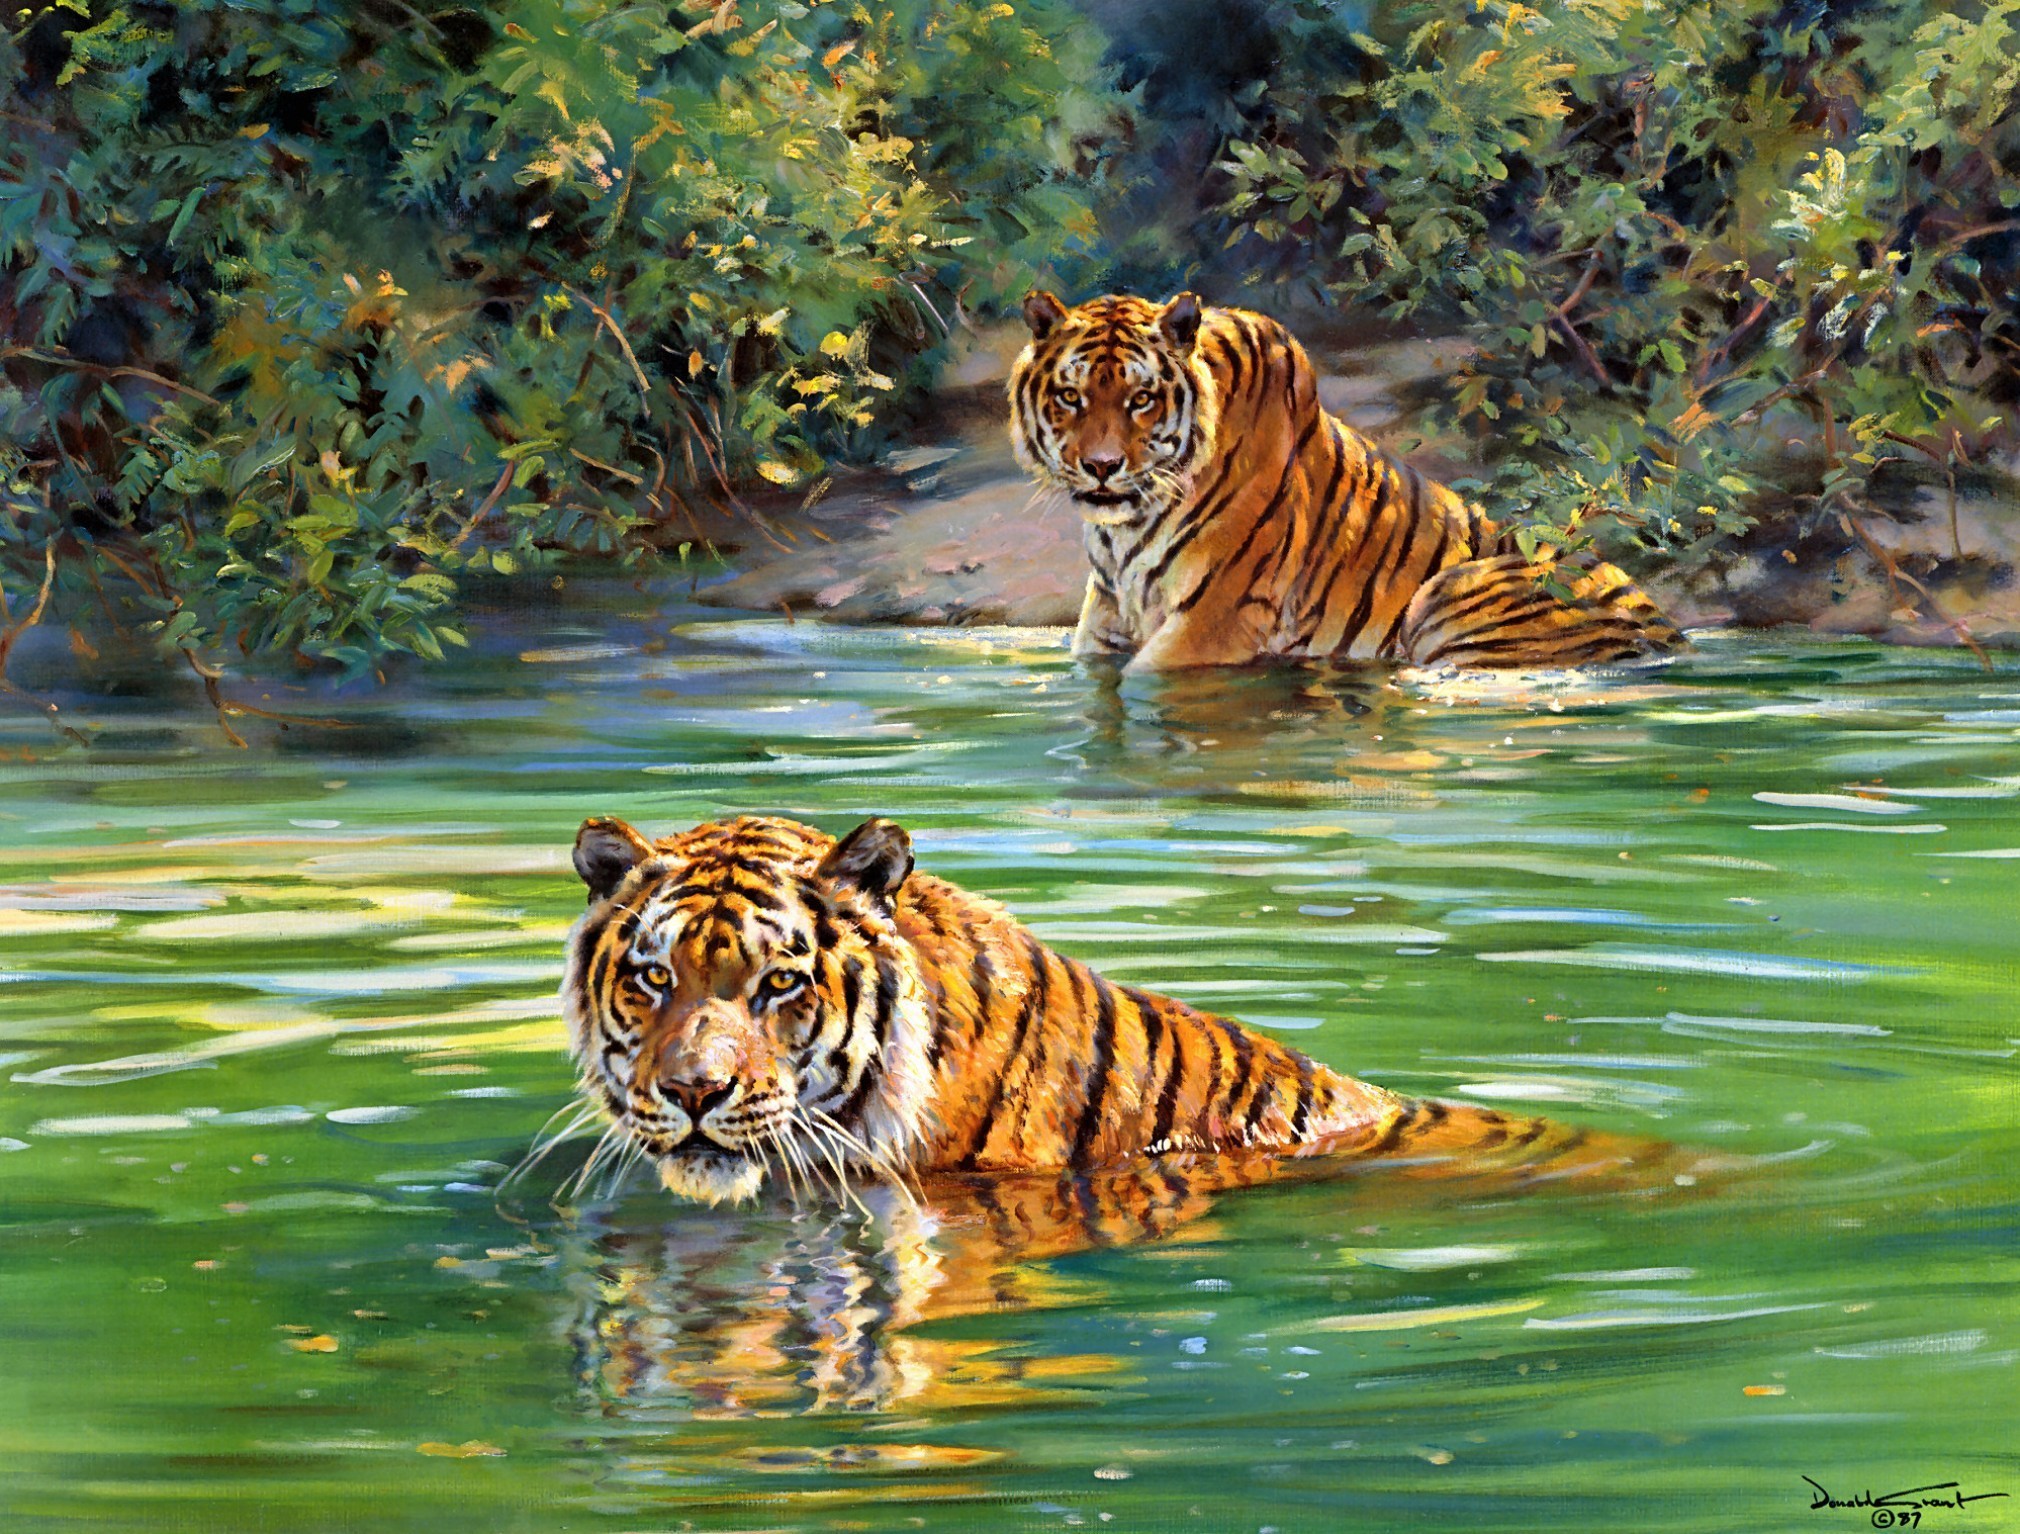 donald, Grant, Tigers, Painting, River, Tiger, Jungle Wallpaper